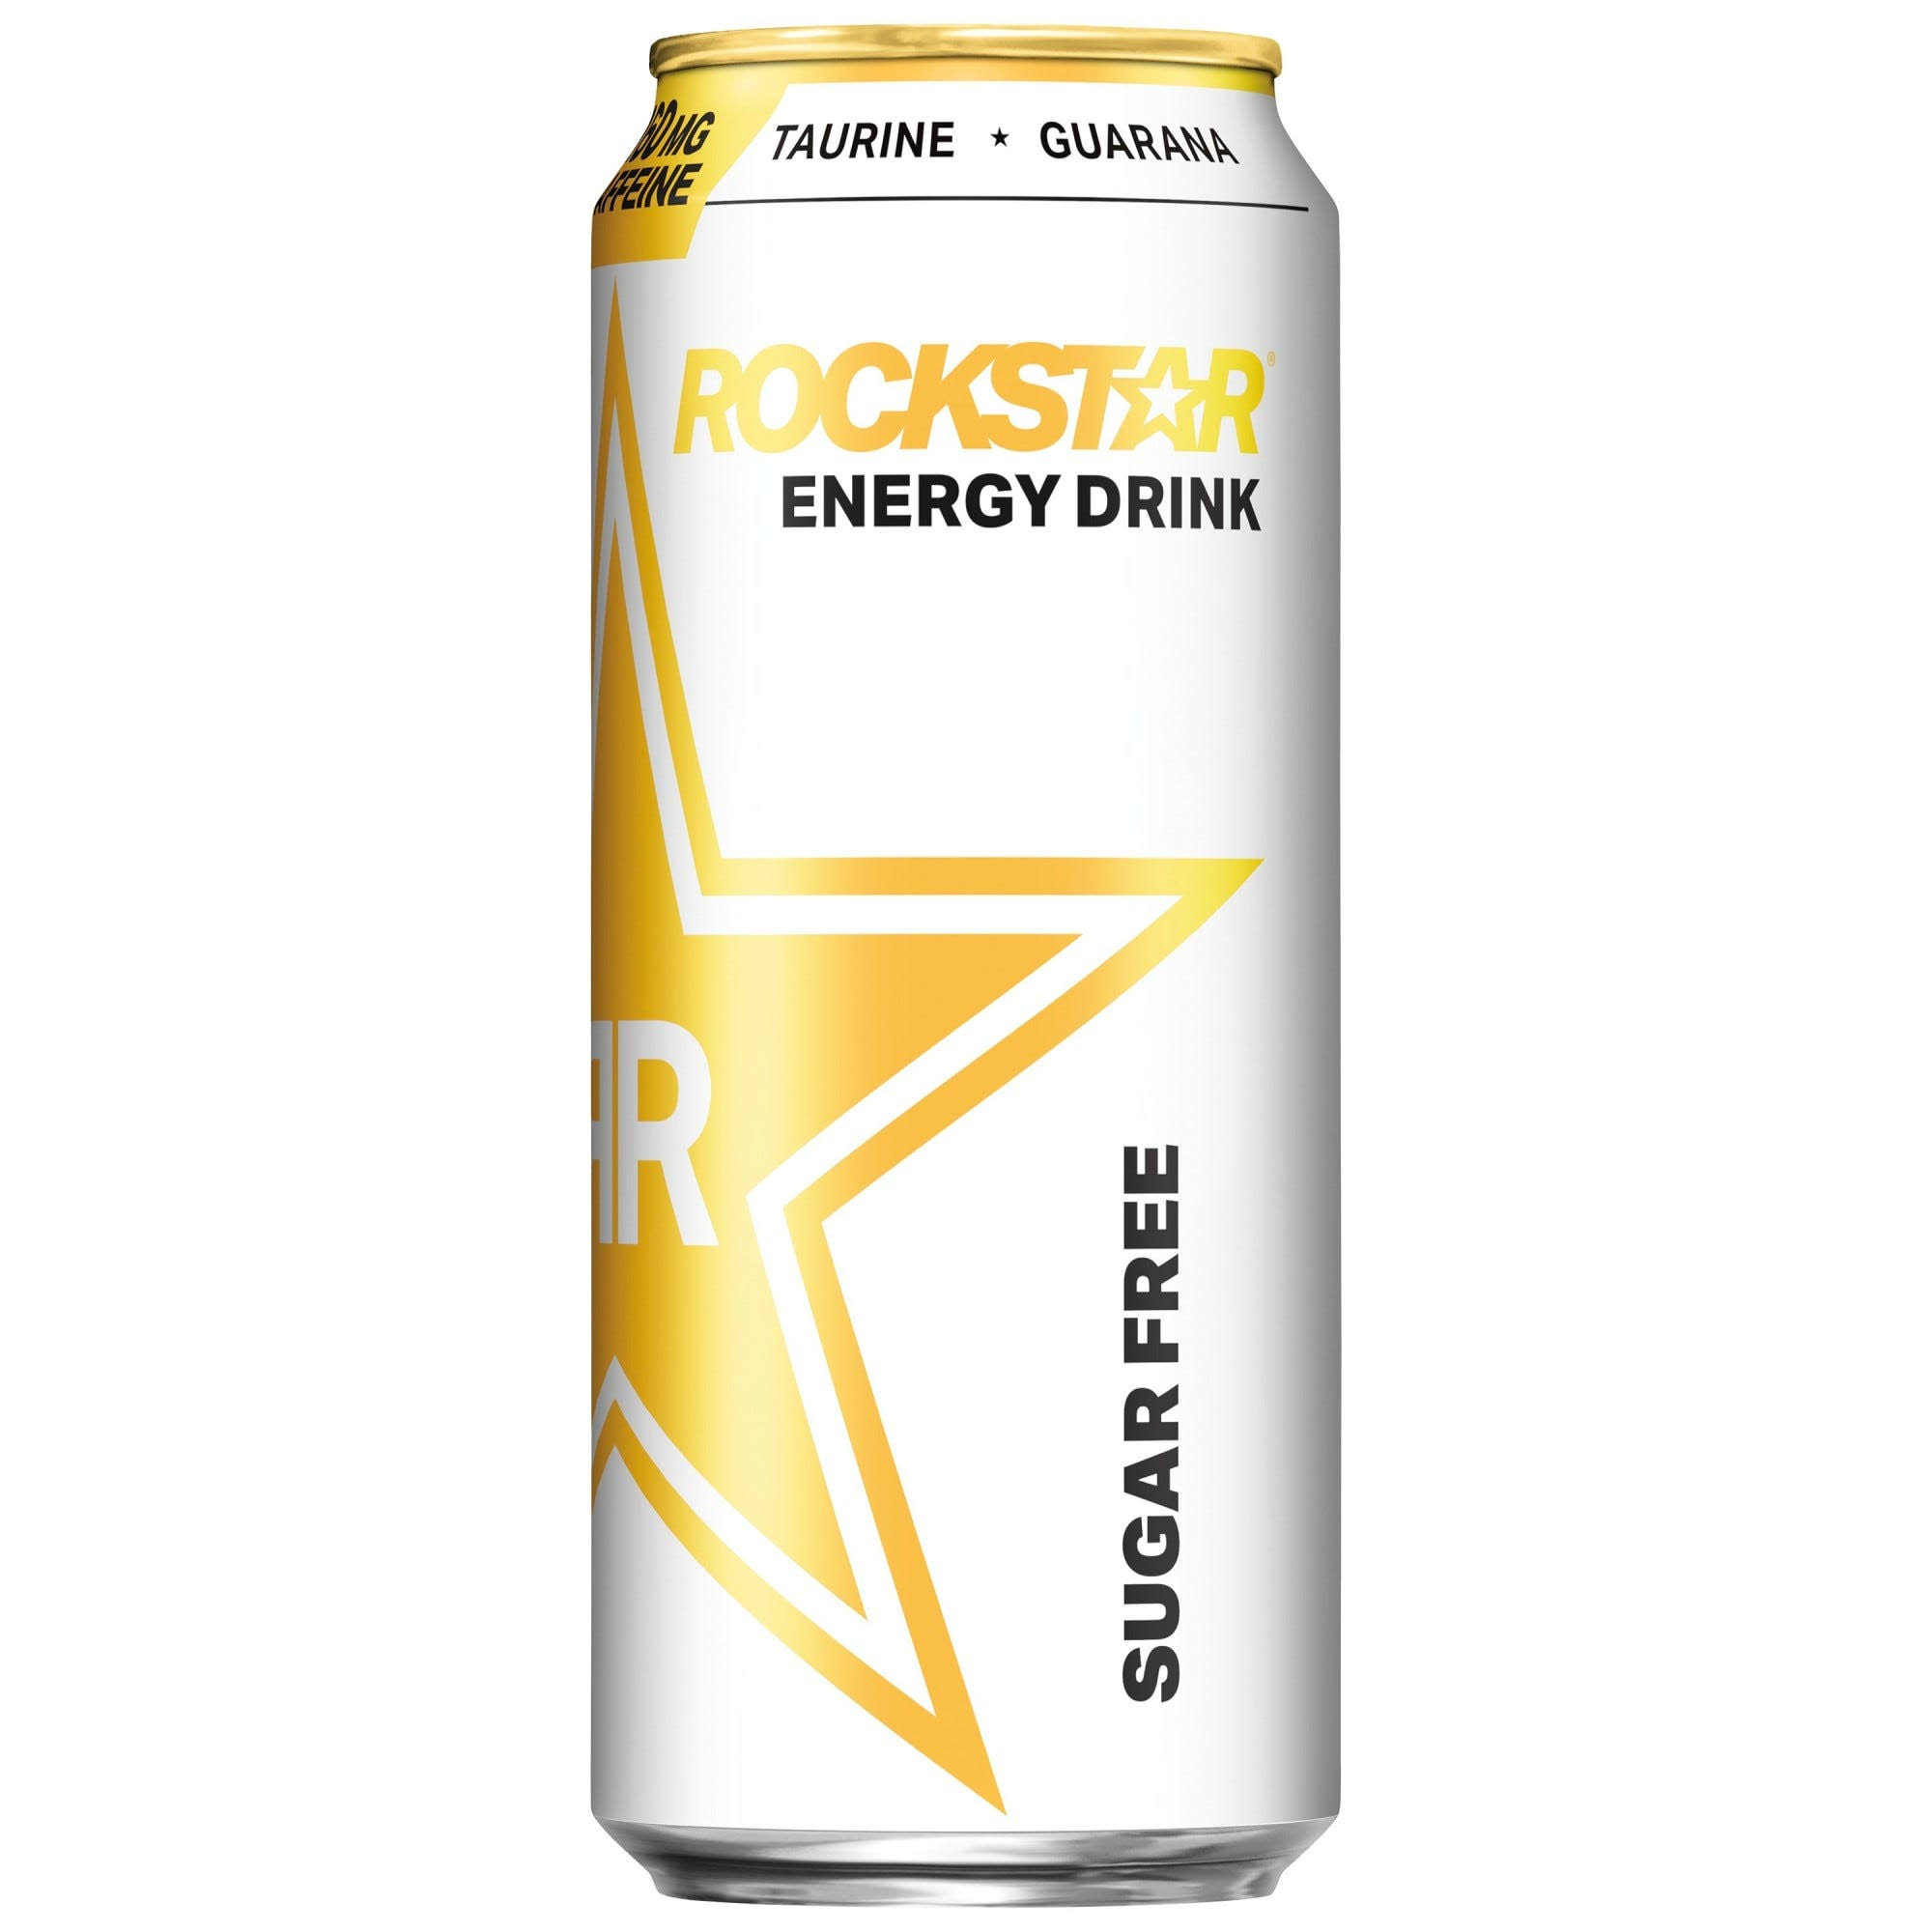 Rockstar Energy Drink, Sugar Free - 16 fl oz